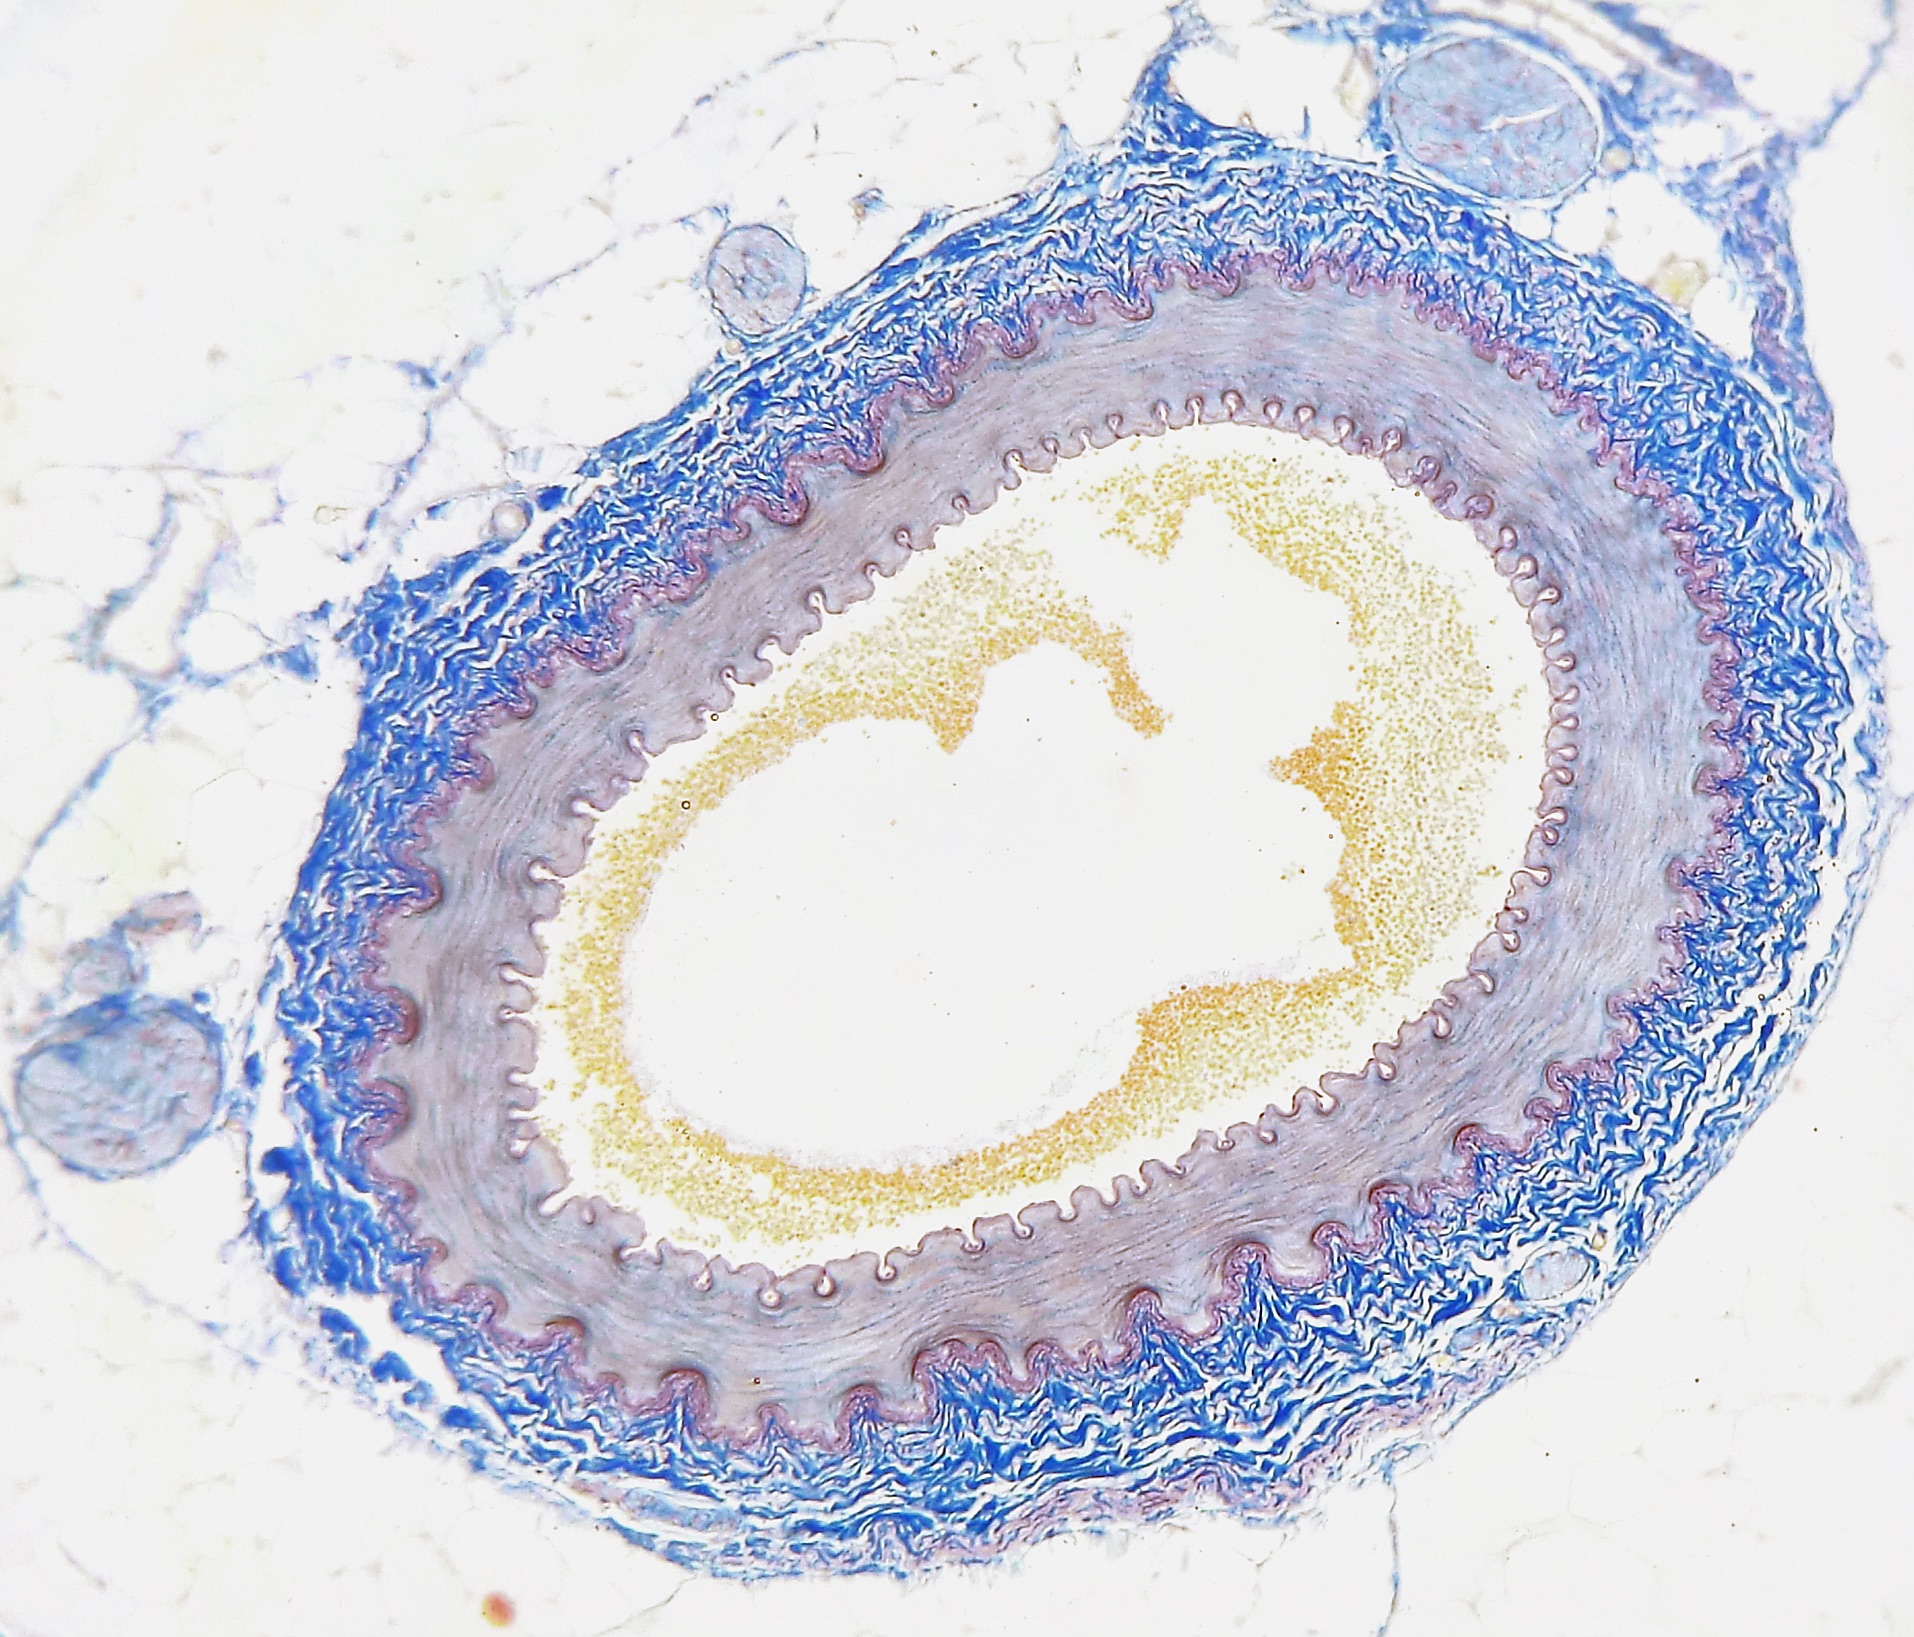 Querschnitt einer menschlichen Arterie mit Verkalkungen (gelb). © Wikimedia Commons